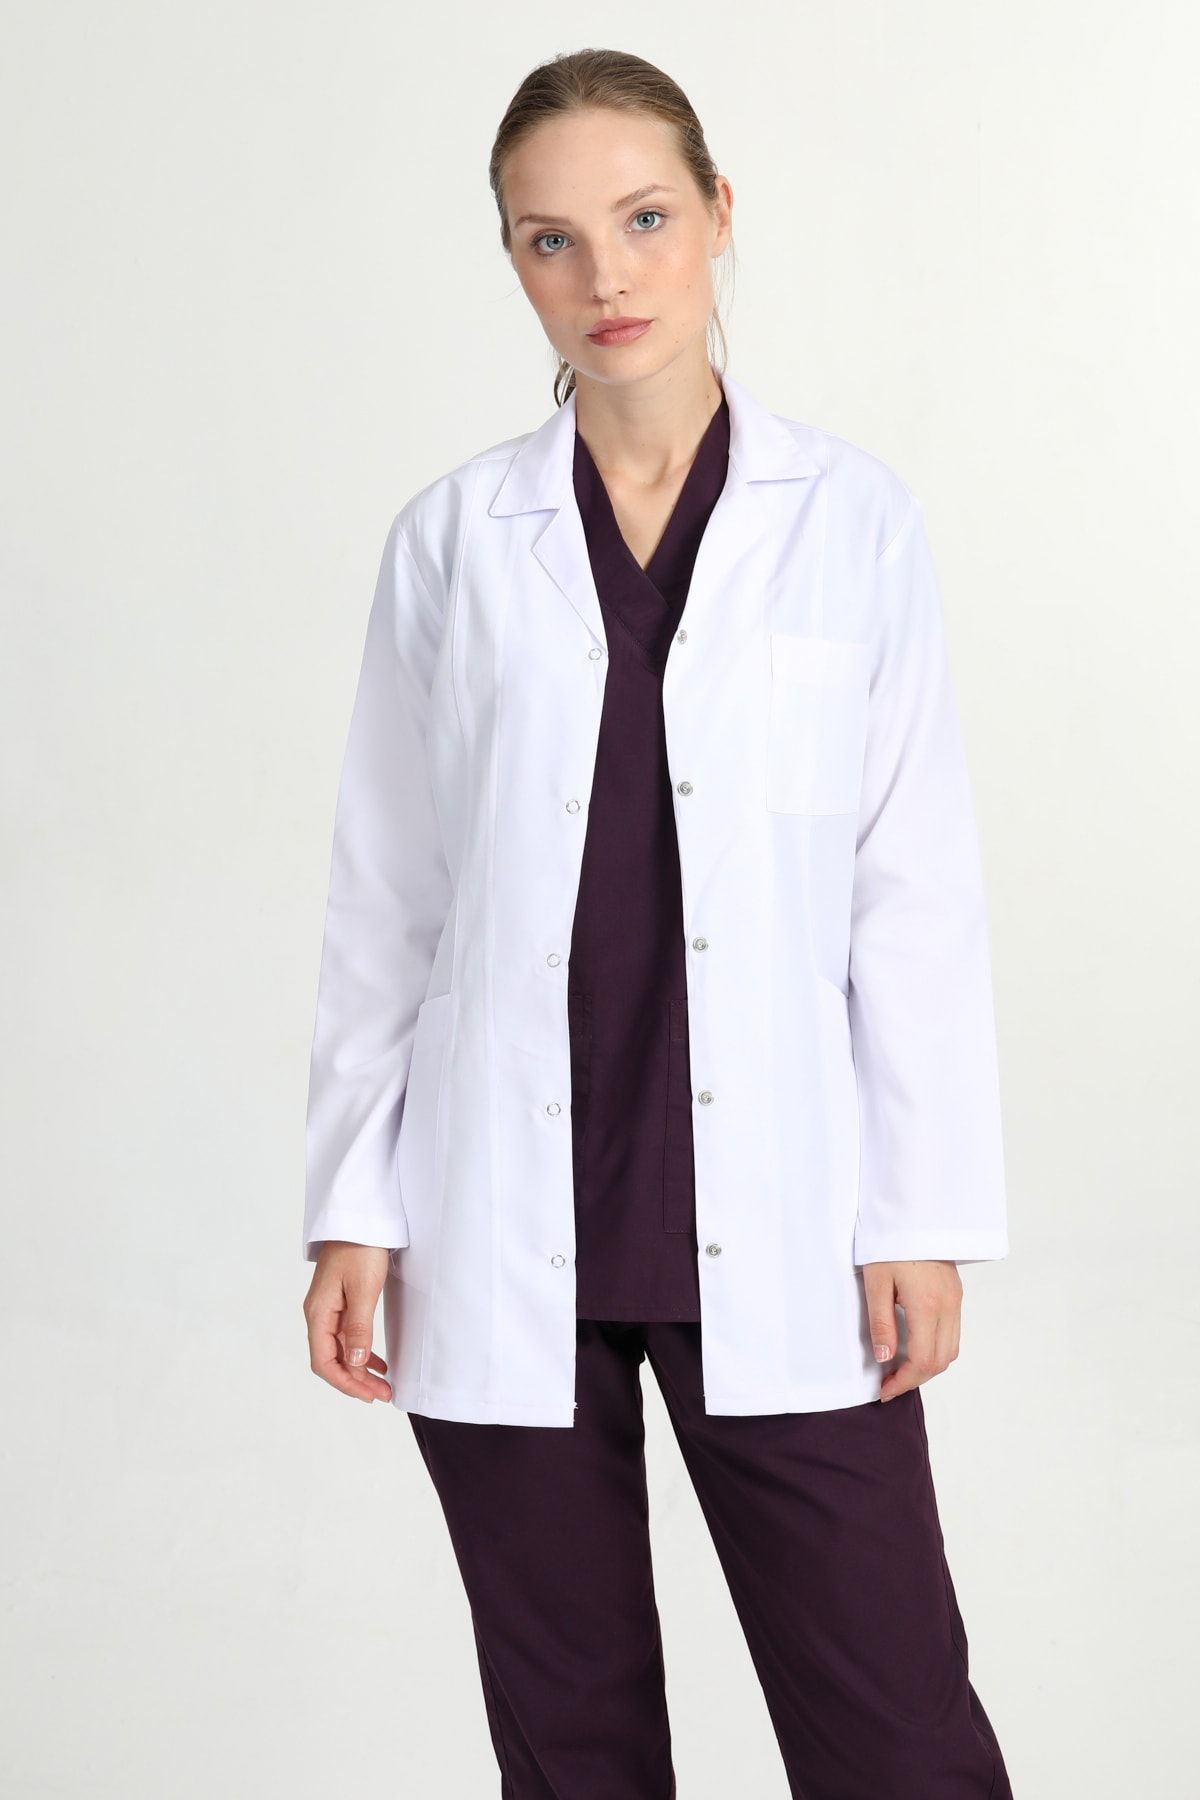 BAŞAK Ceket Boy Beyaz Gömlek Yaka Doktor Hemşire Öğretmen Önlüğü